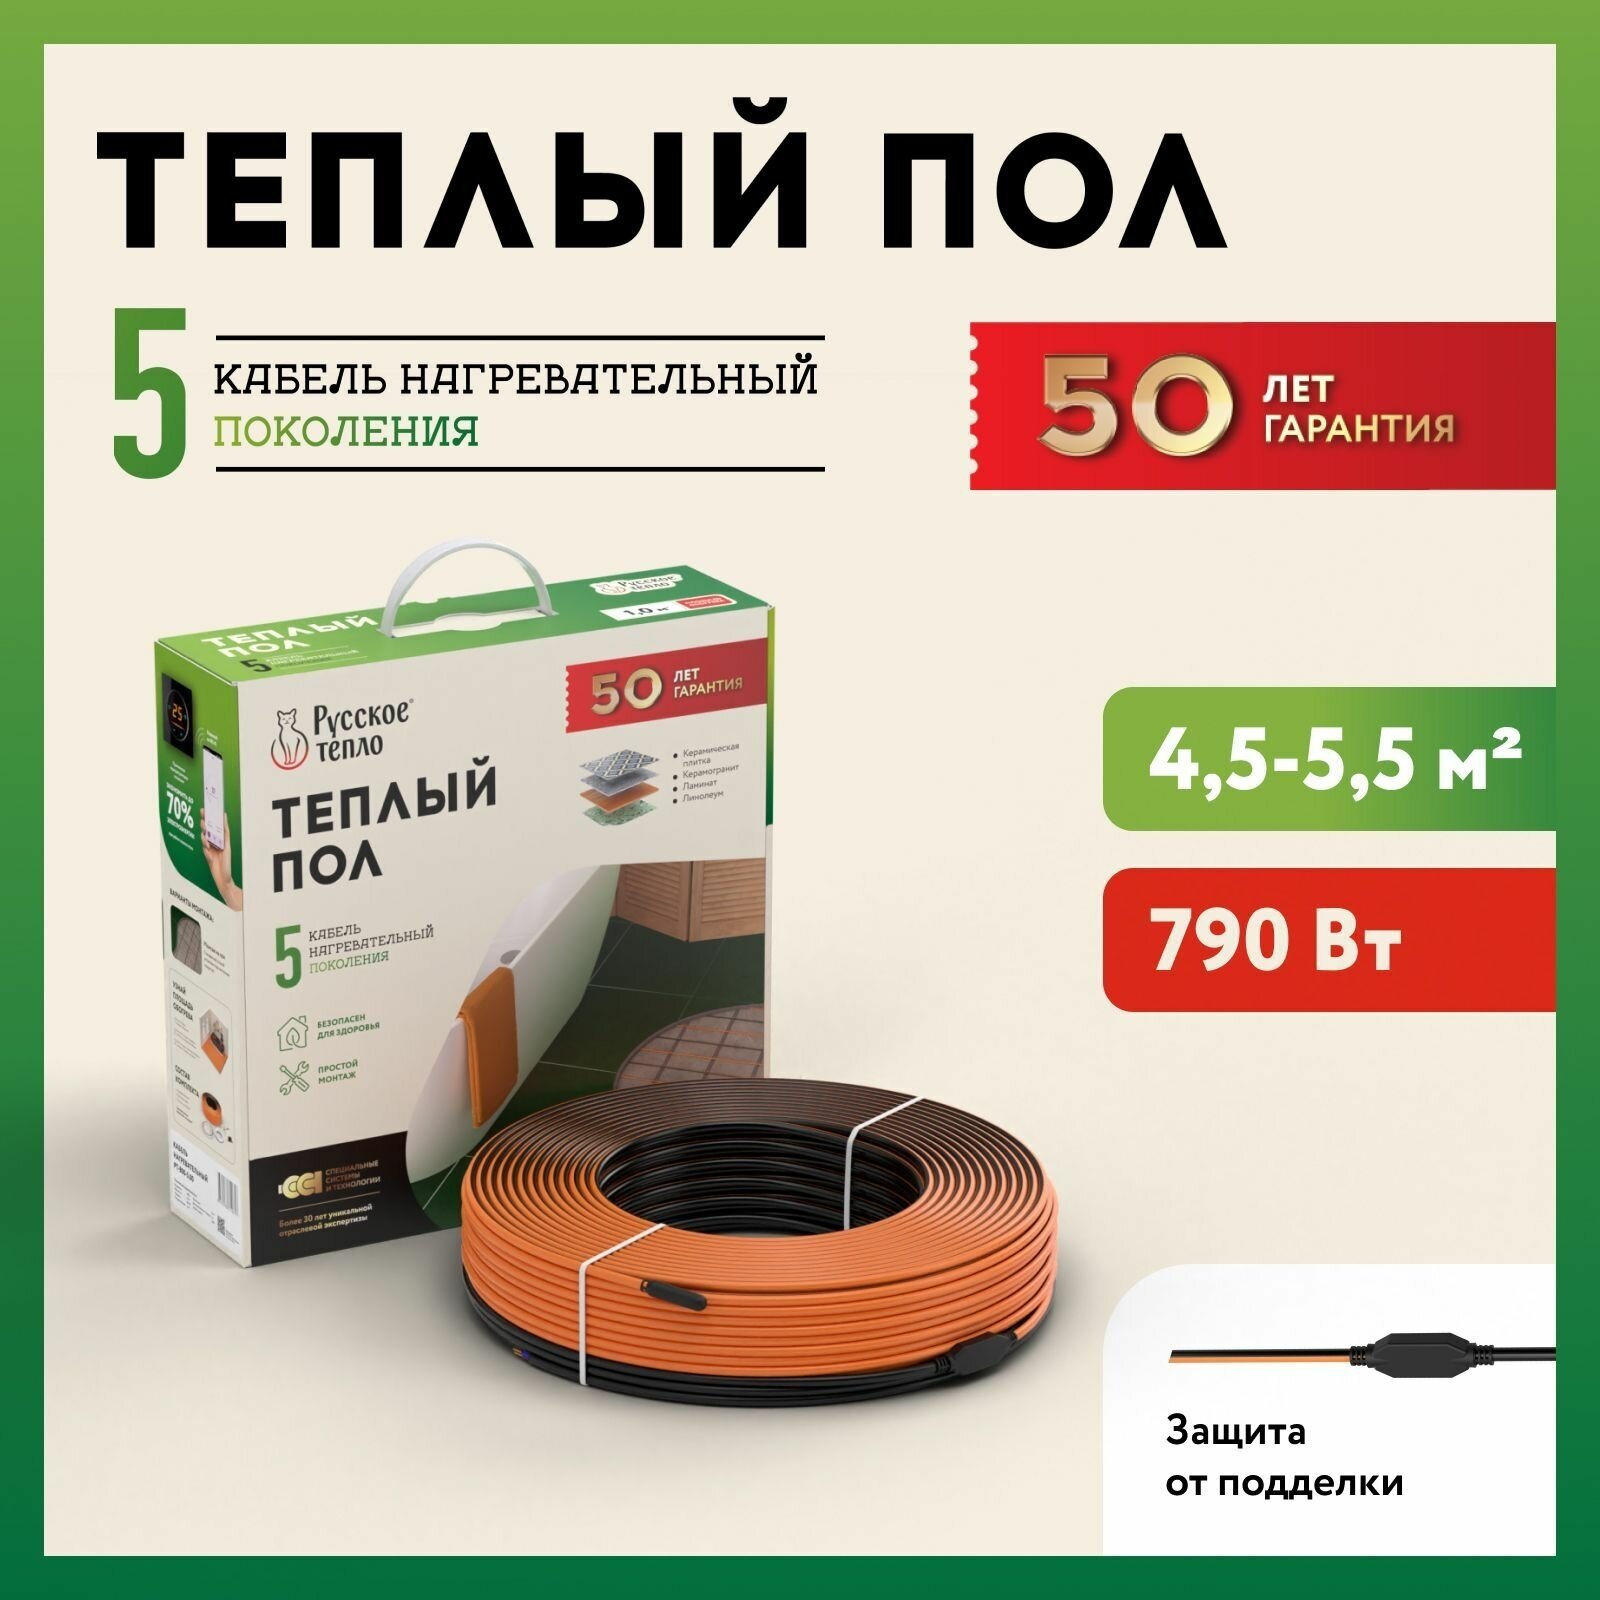 Теплый пол "Русское тепло". Нагревательный кабель электрический под ламинат/плитка/линолеум: 39м (790 Вт).